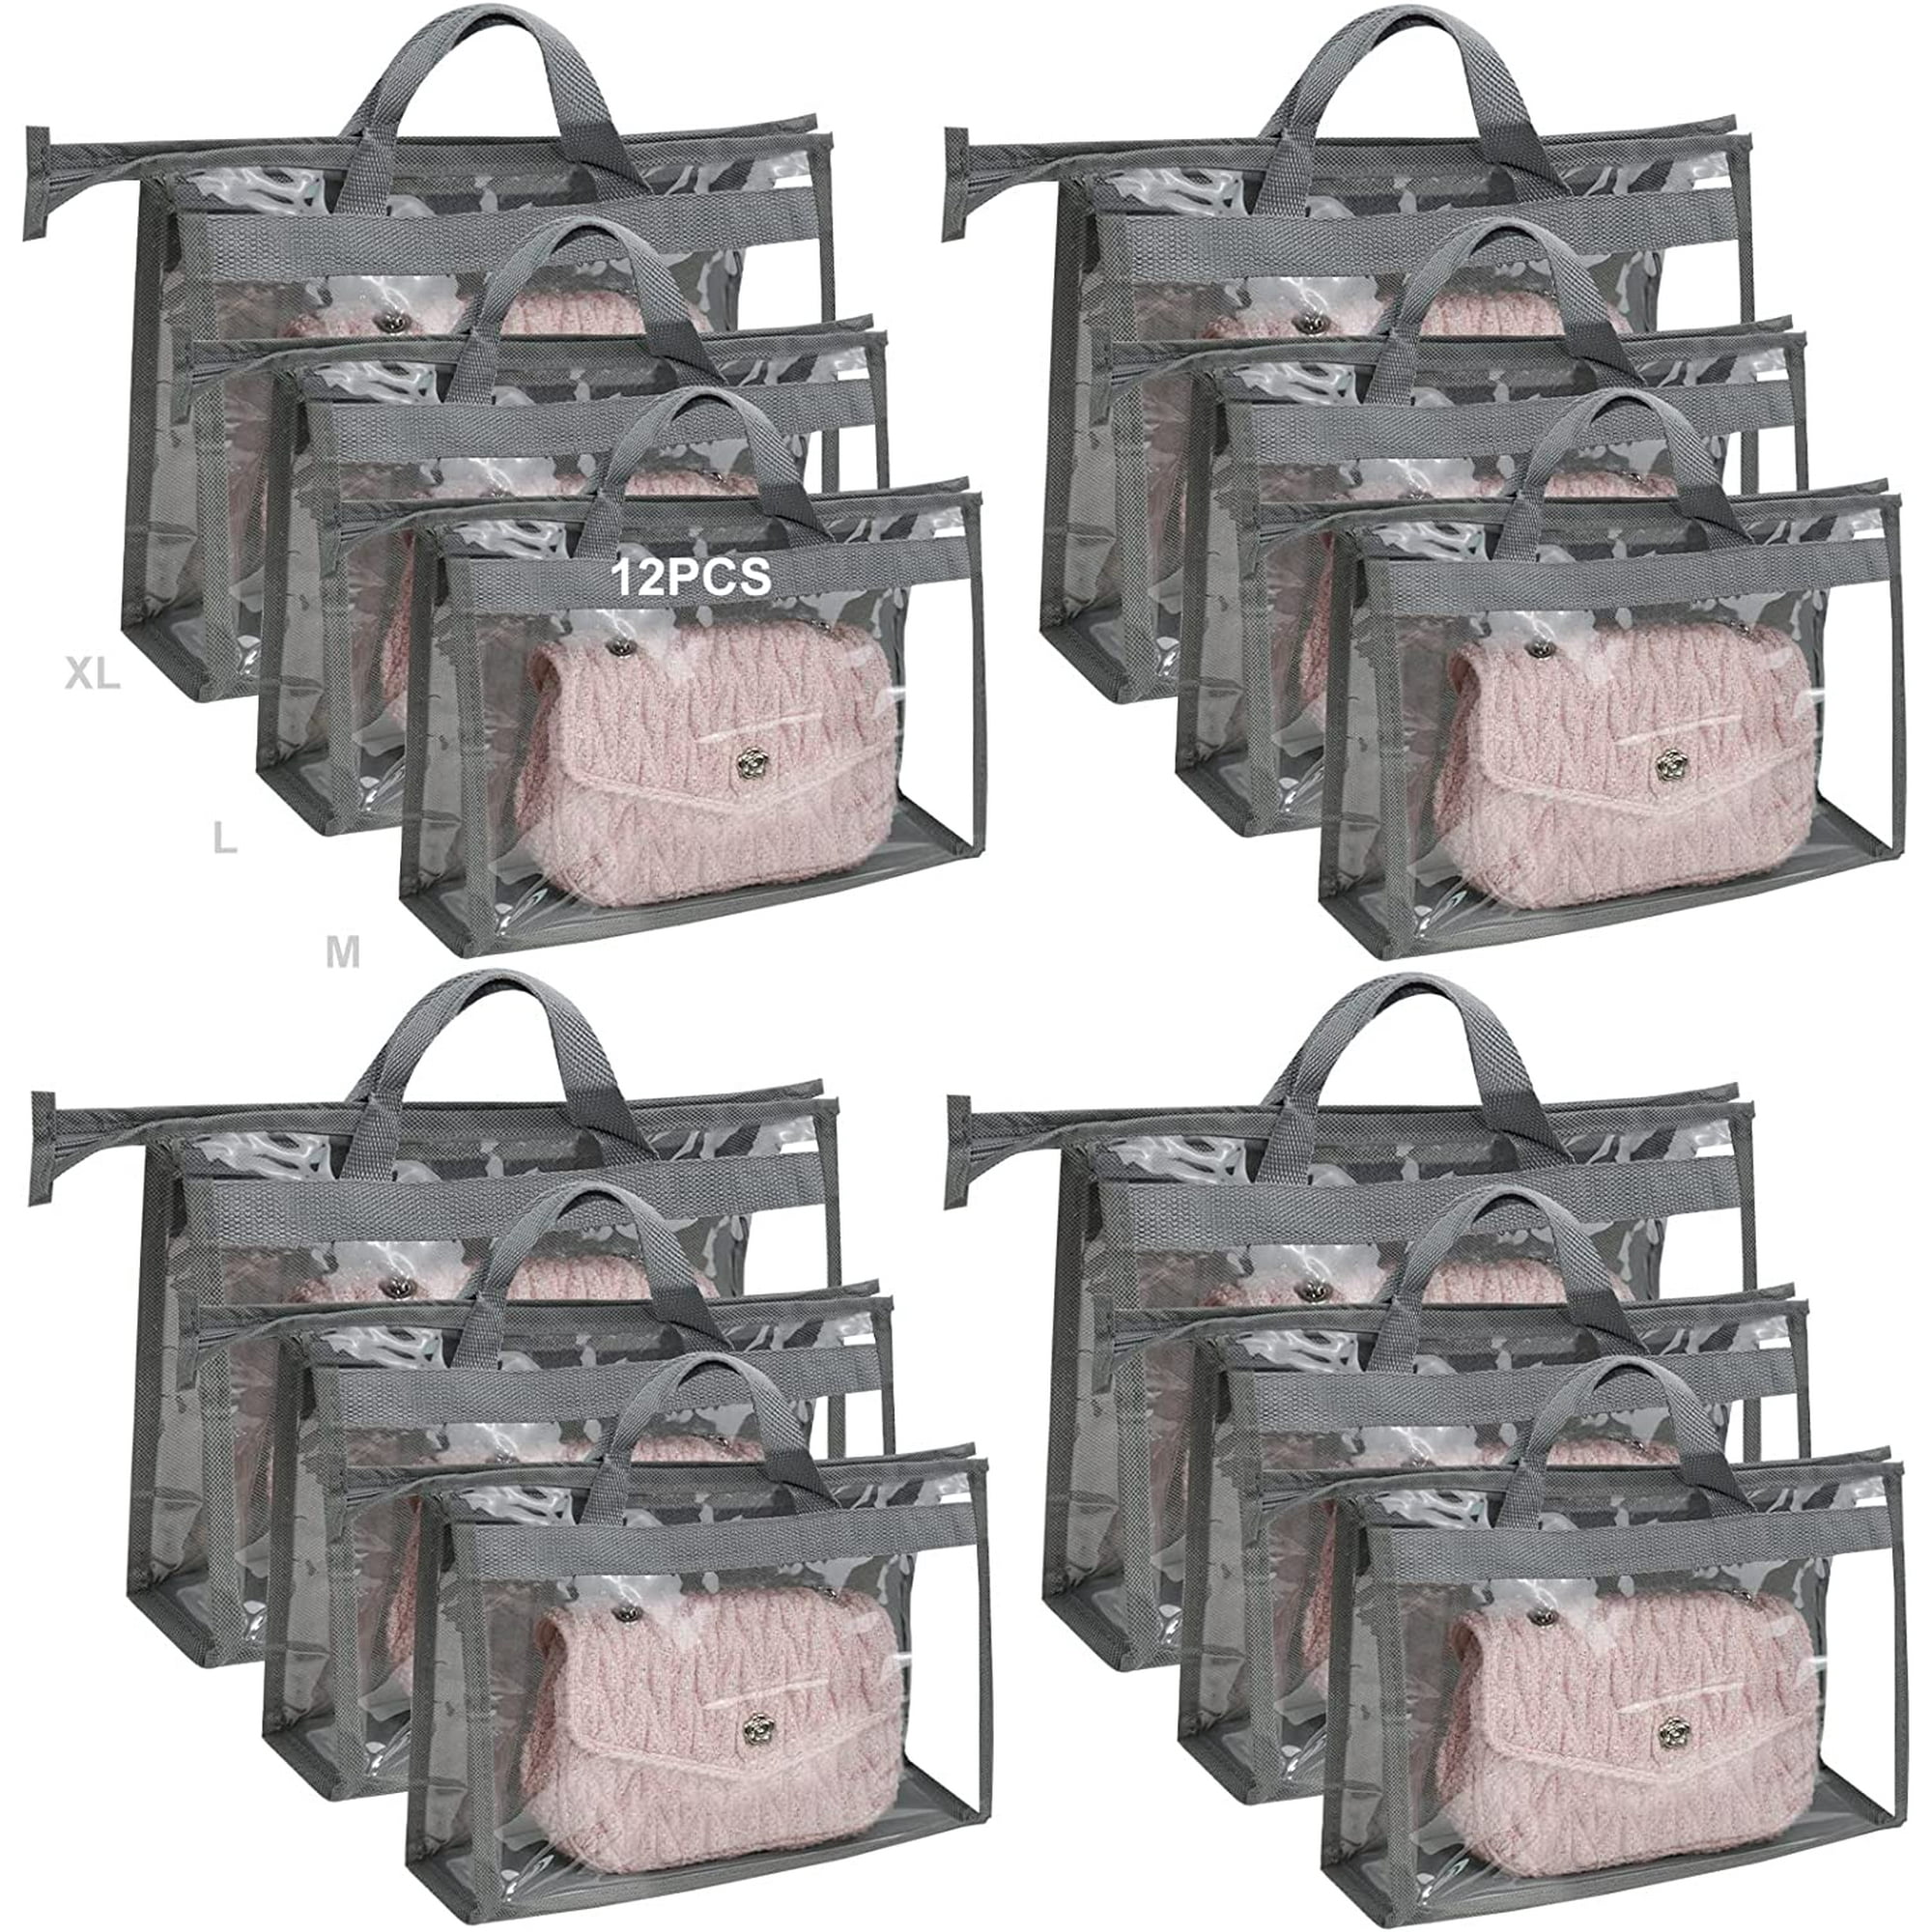  4 Pcs Handbag Storage, 4 Sizes Handbag Dust Cover Bag